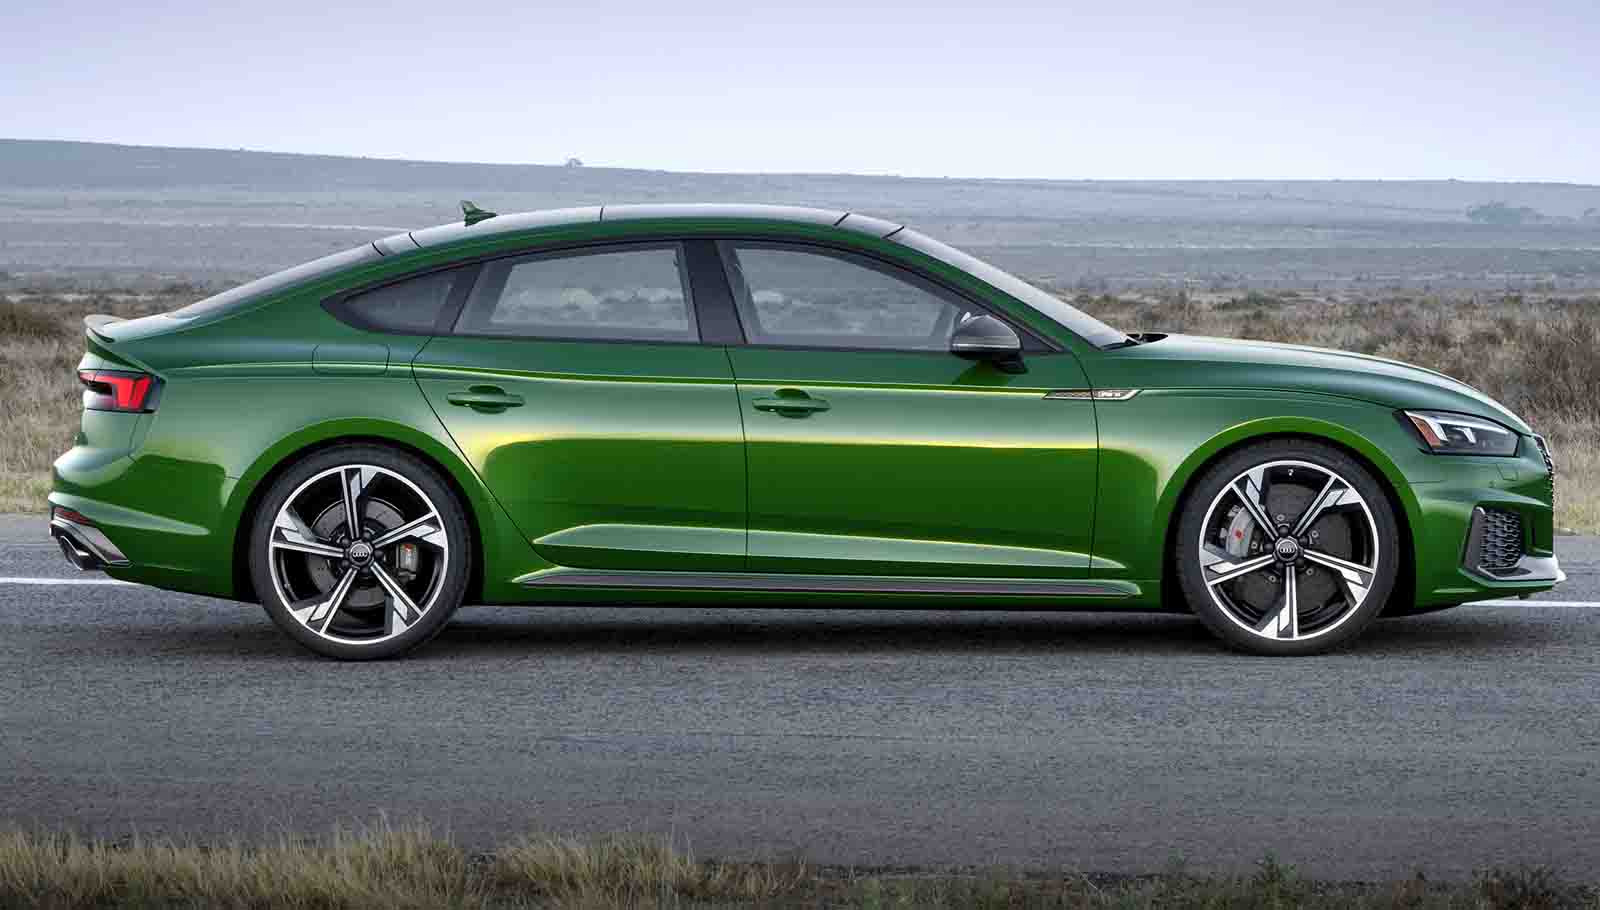 Audi-RS5